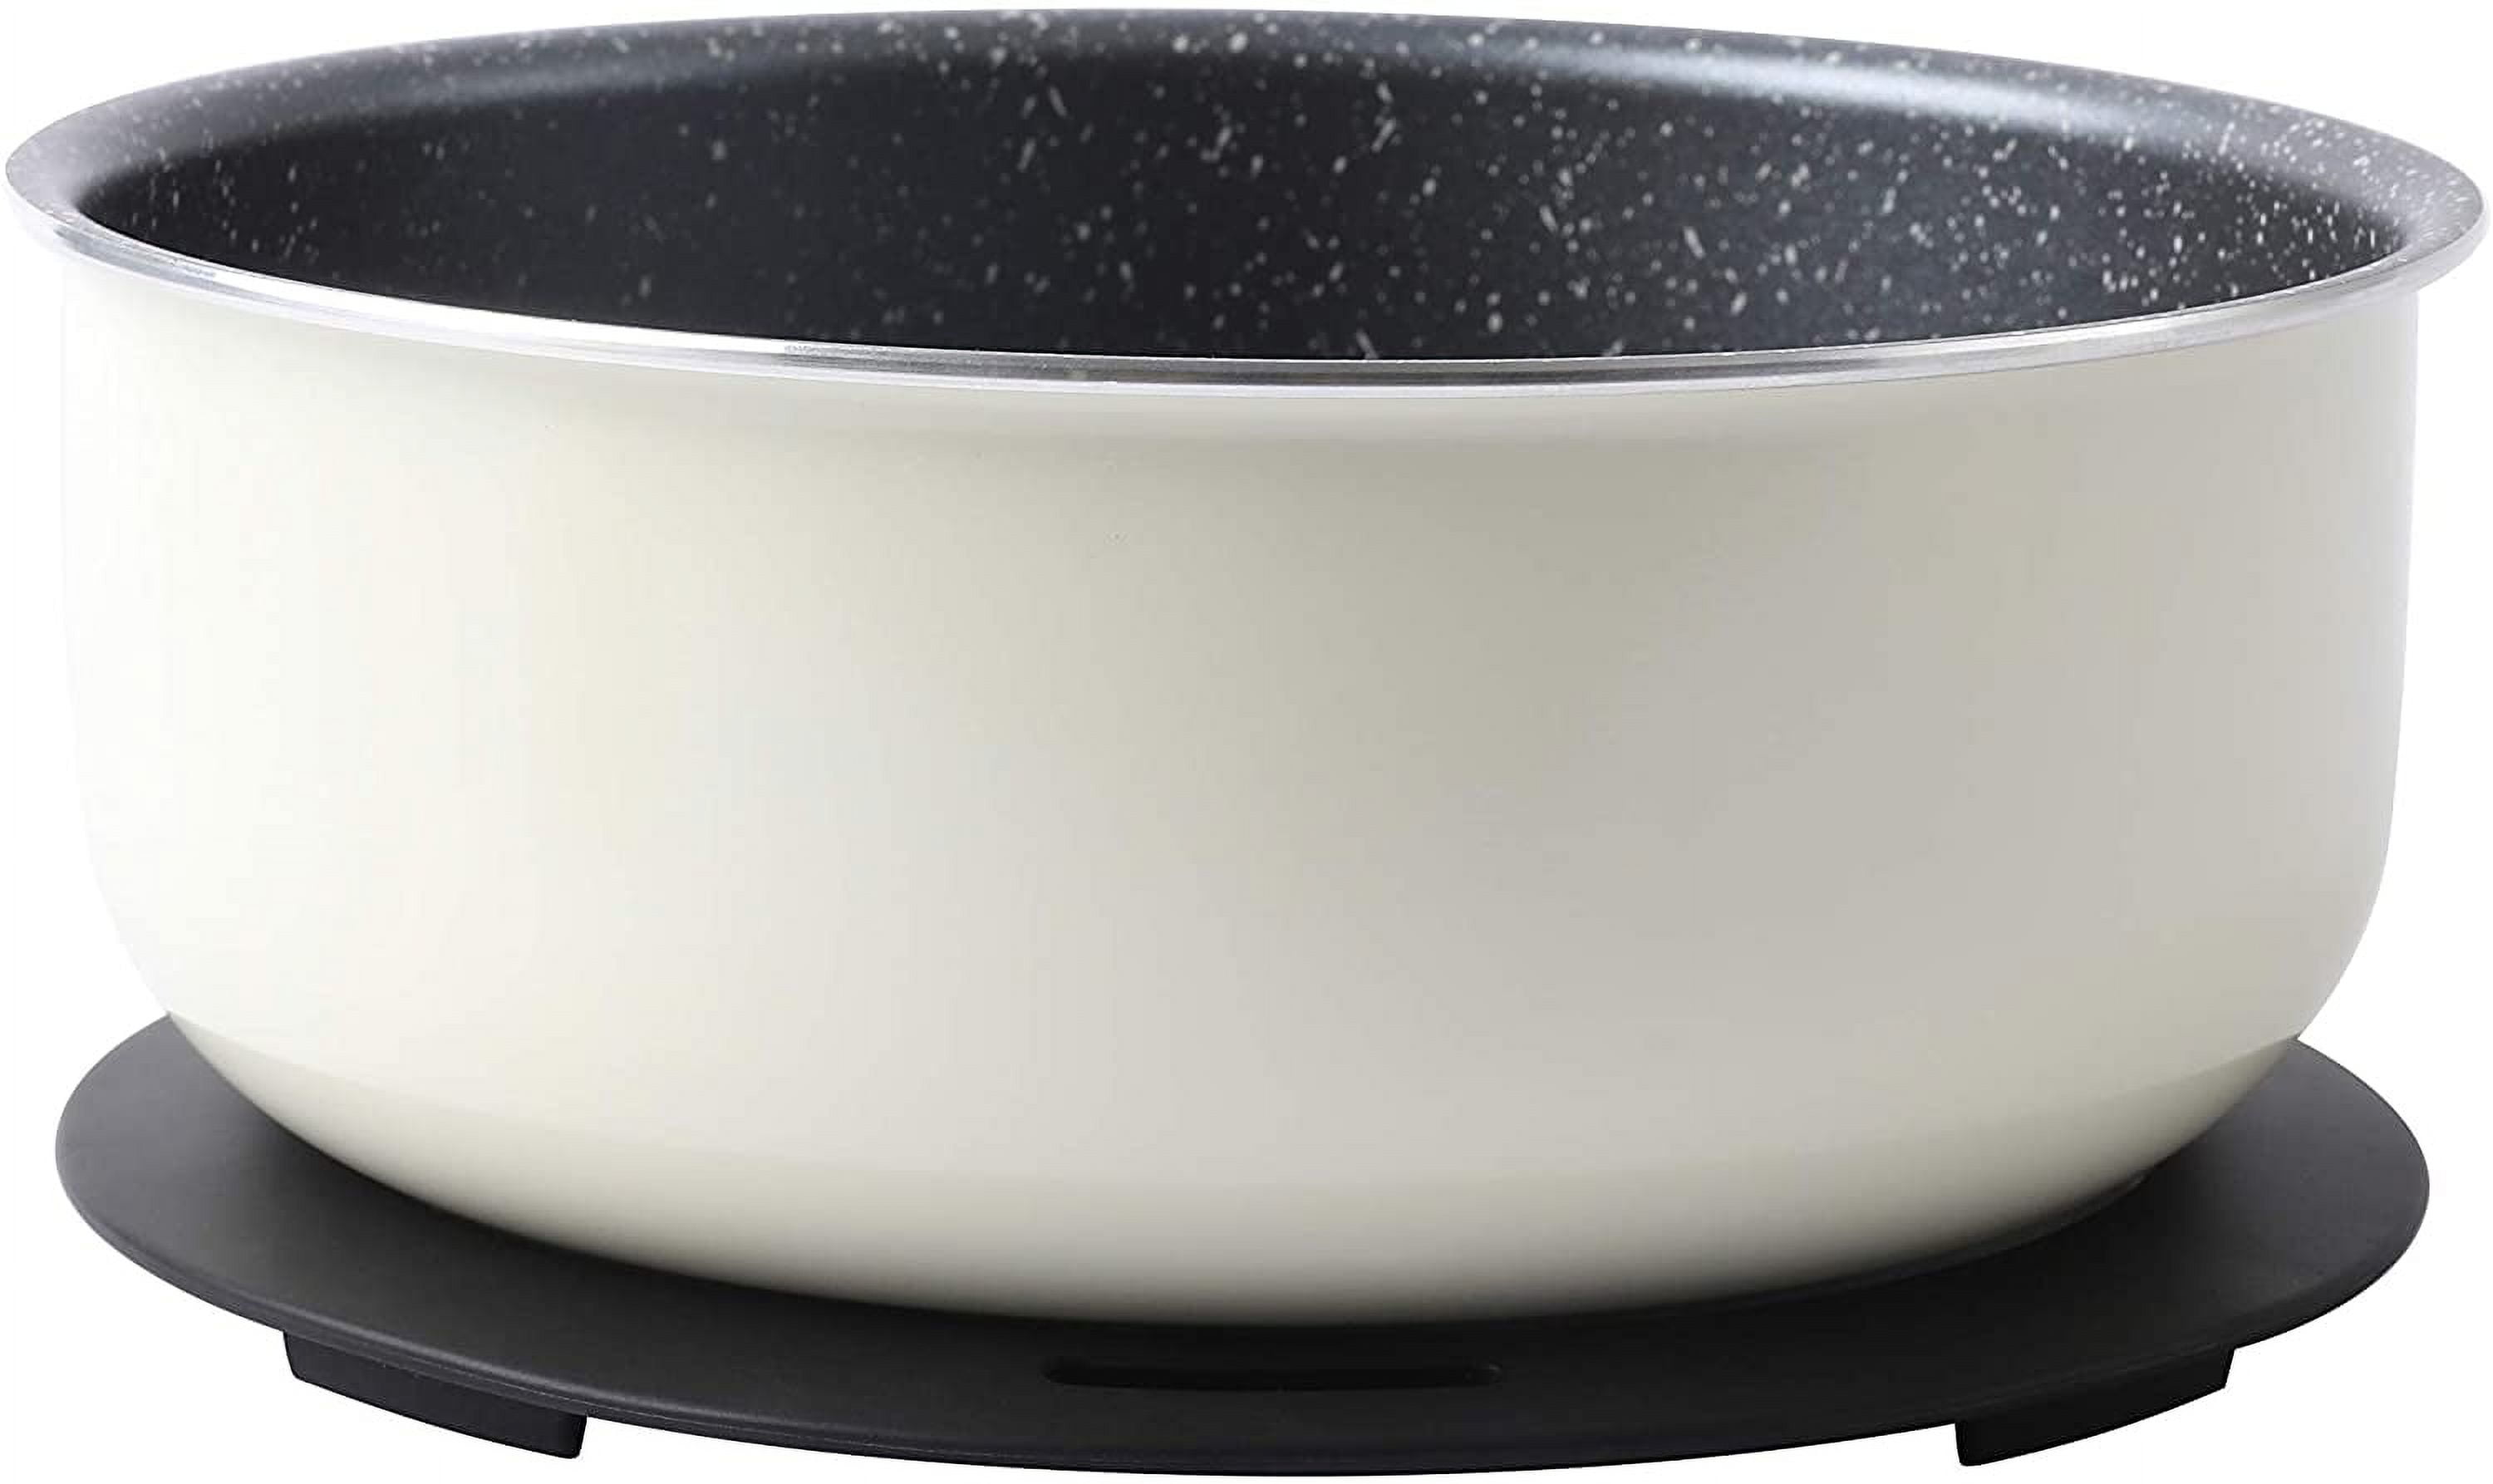  Motase 6pcs Pots and Pans Set, Nonstick Cookware Set Detachable  Handle, Induction Kitchen Cookware Sets Non Stick with Removable Handle, RV Cookware  Set, Oven Safe, White: Home & Kitchen